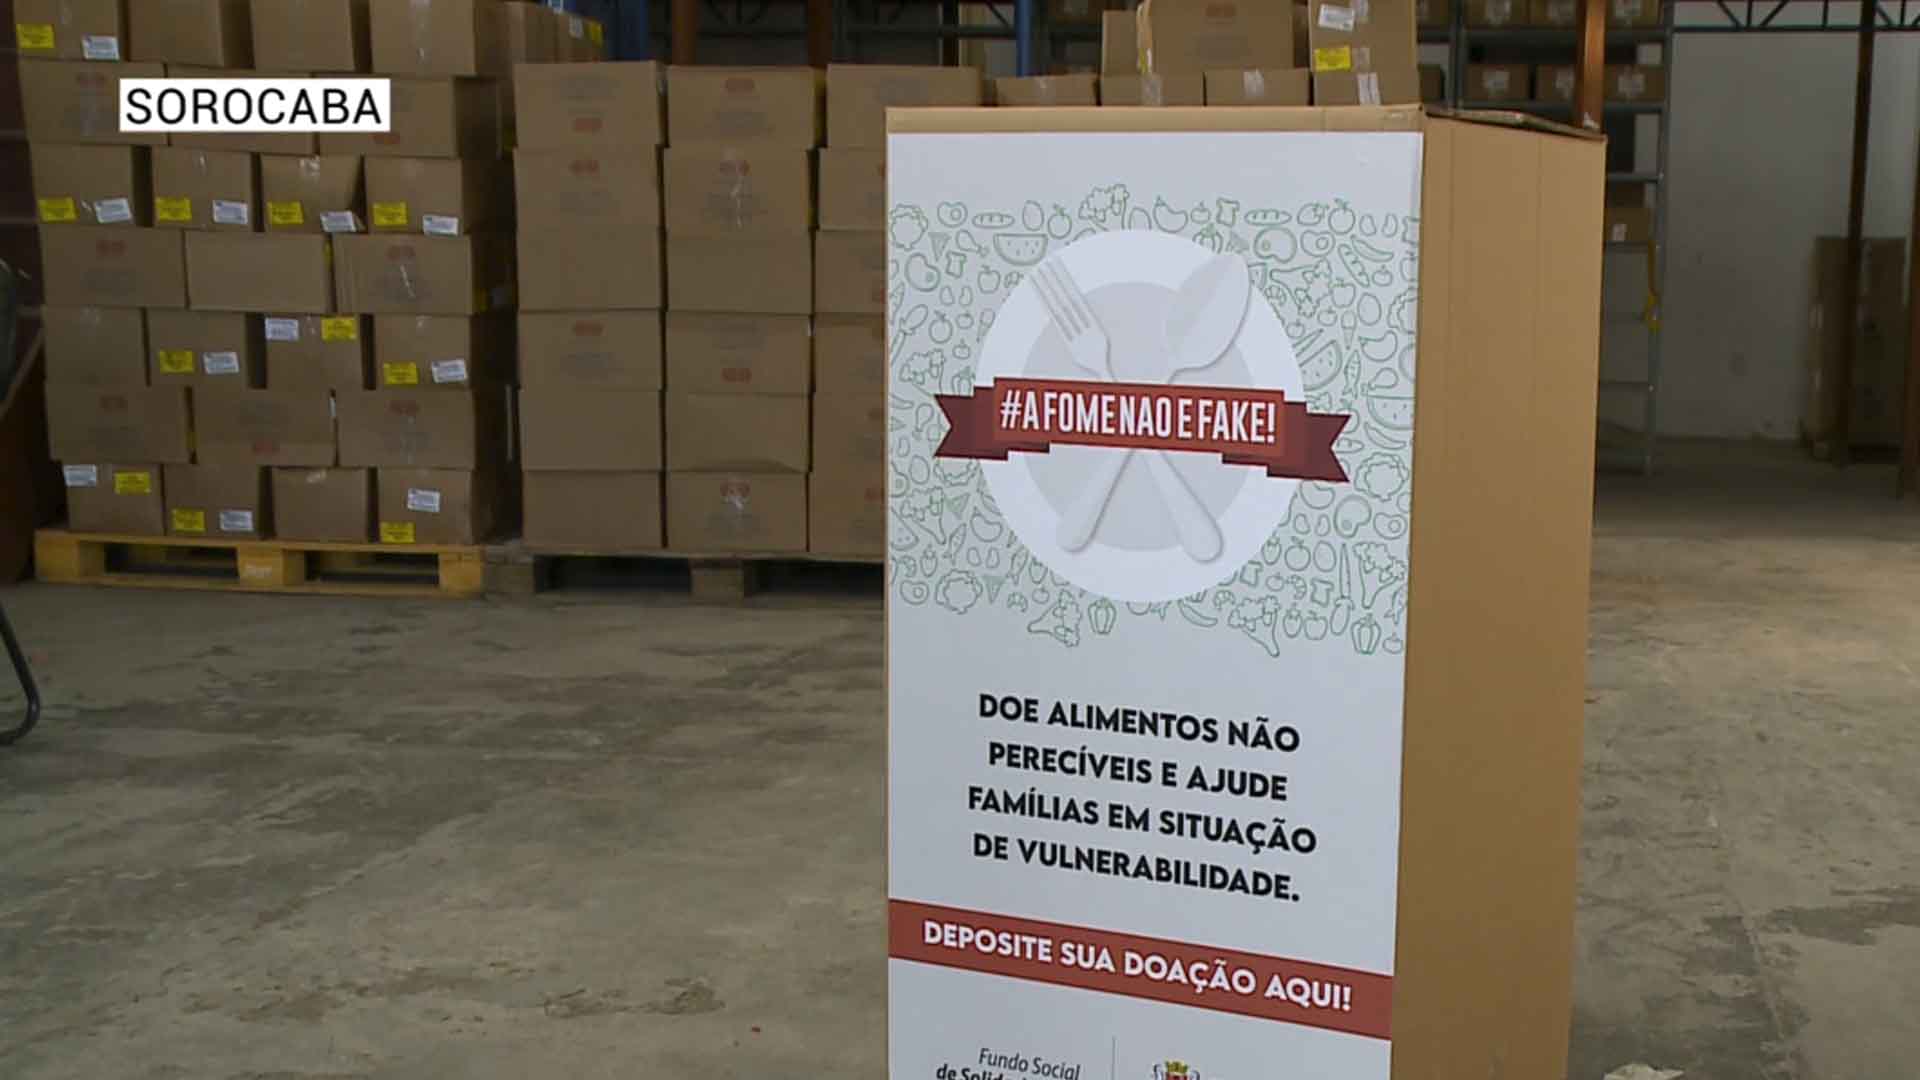 Prefeitura de Sorocaba arrecada mais de 3T em campanha “A fome não é fake”